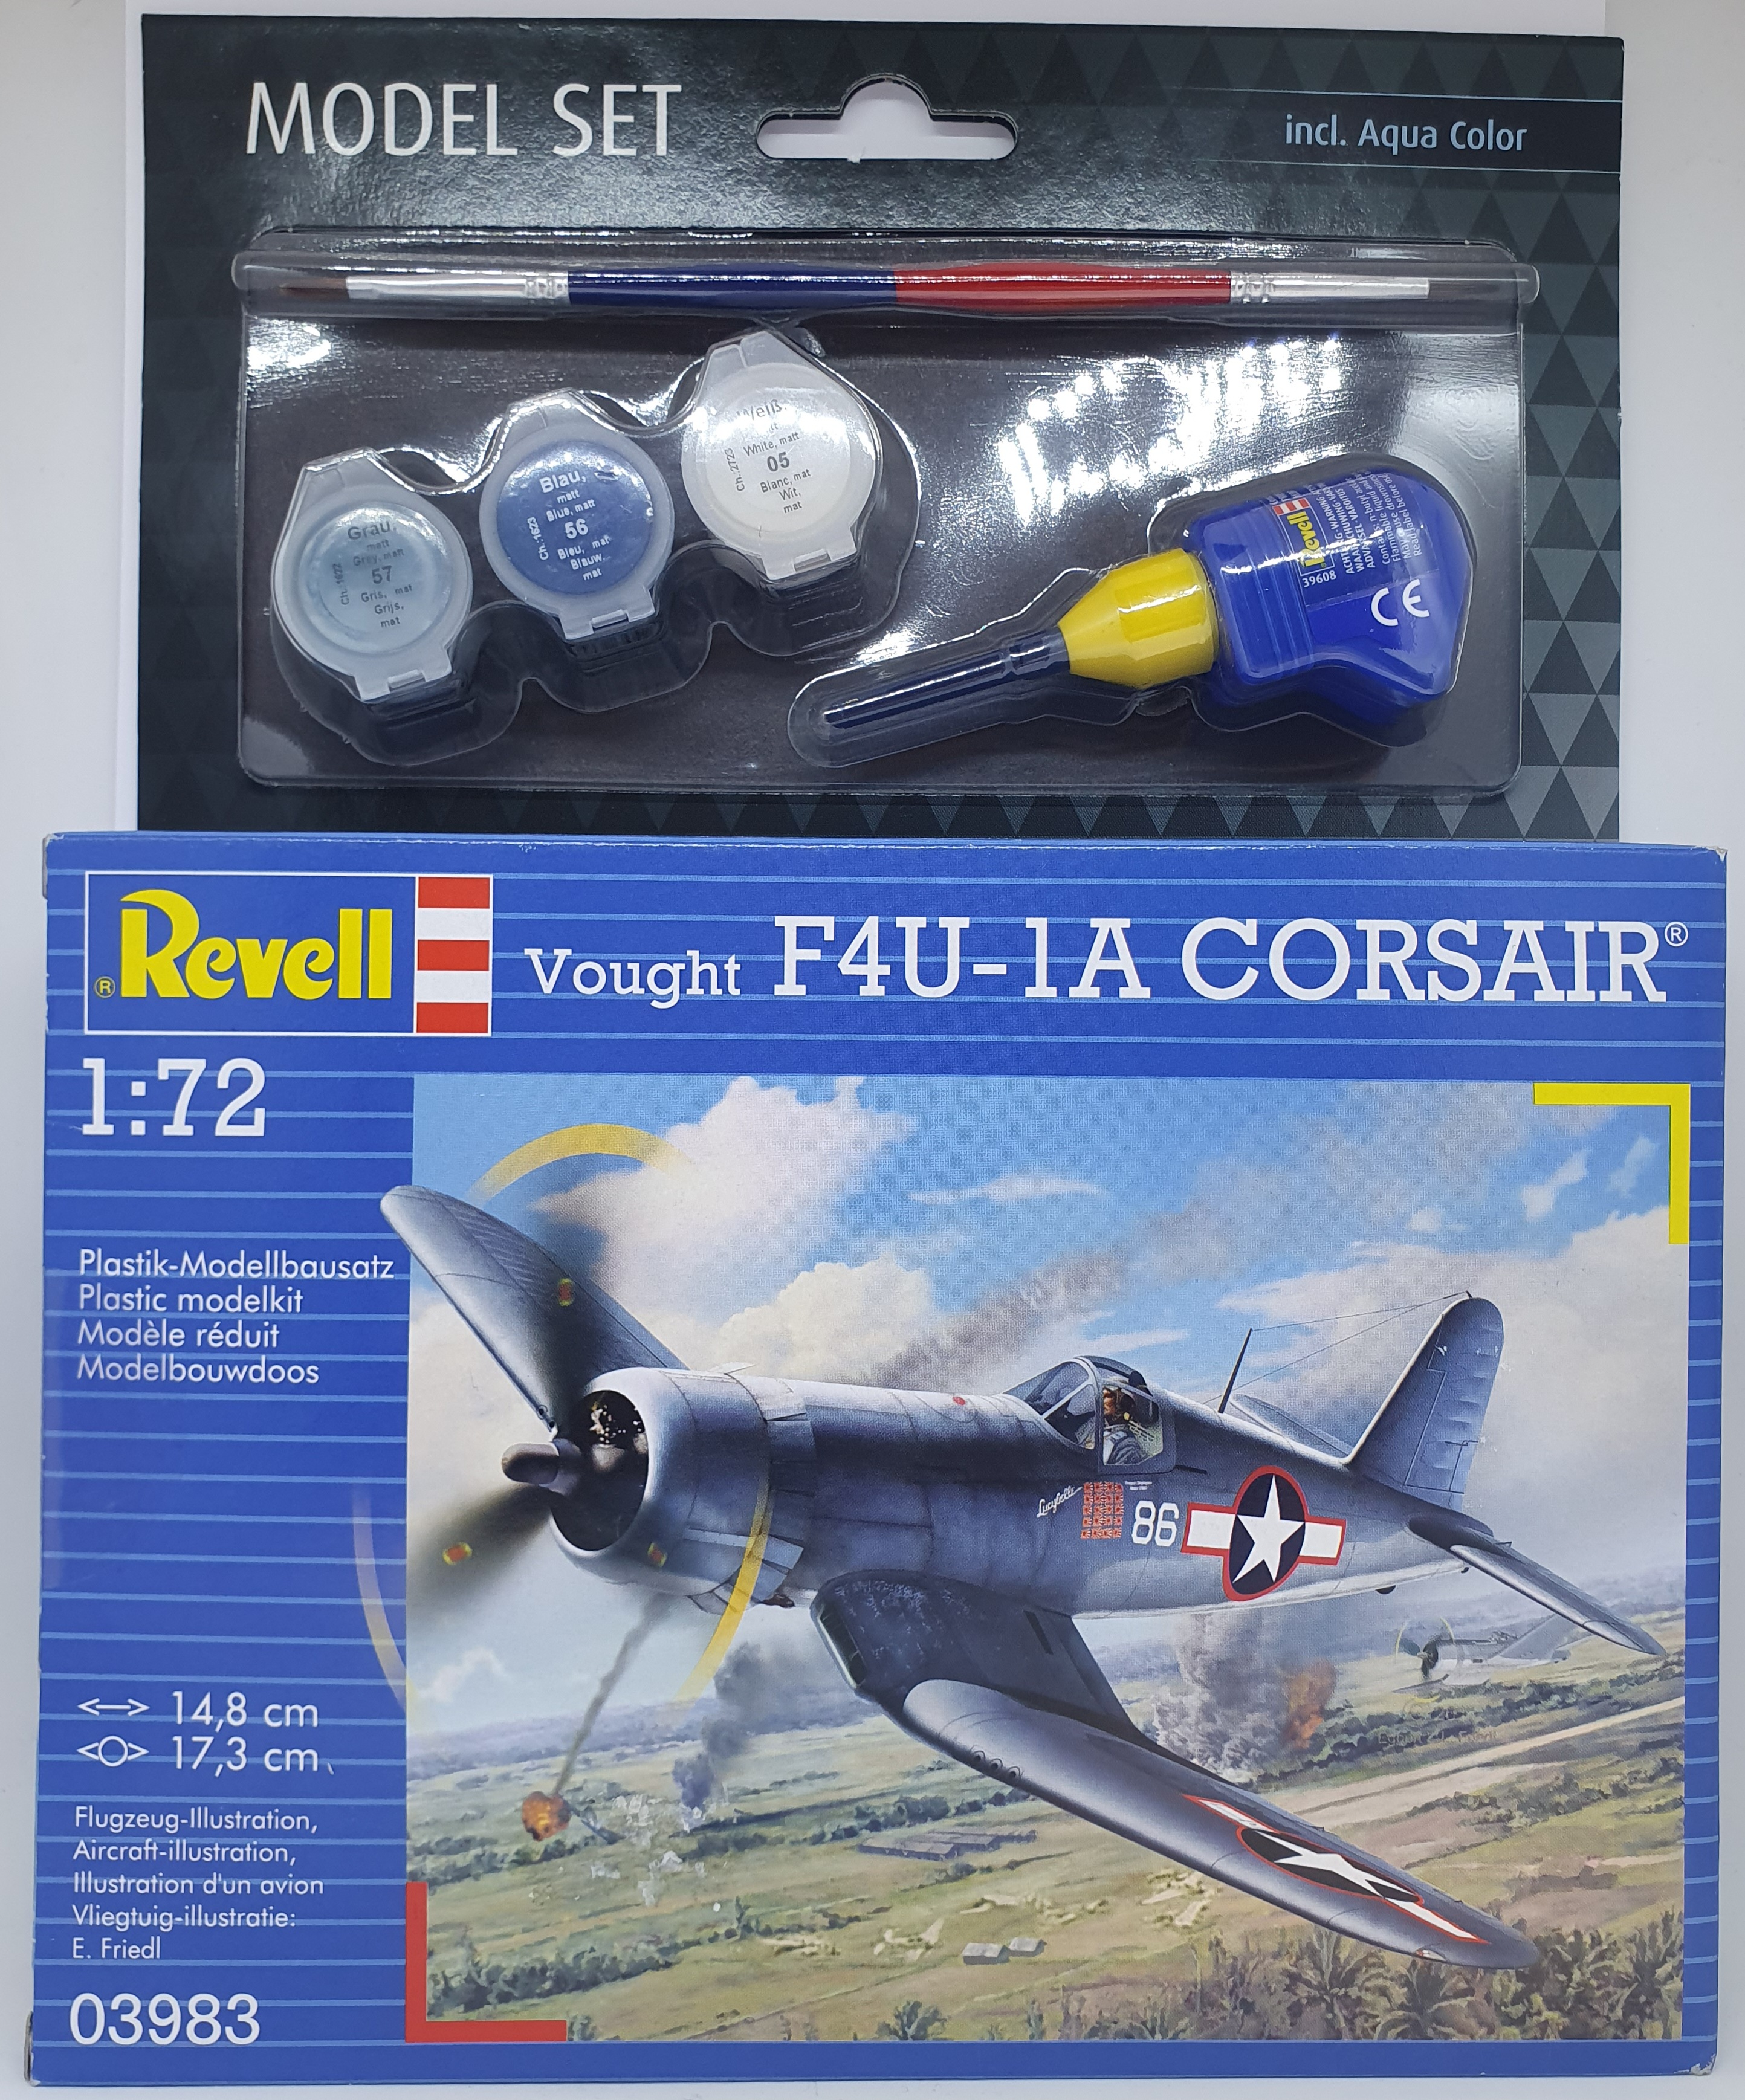 Maquette Revell Model Set Vought F4U-1D Corsair - Maquette